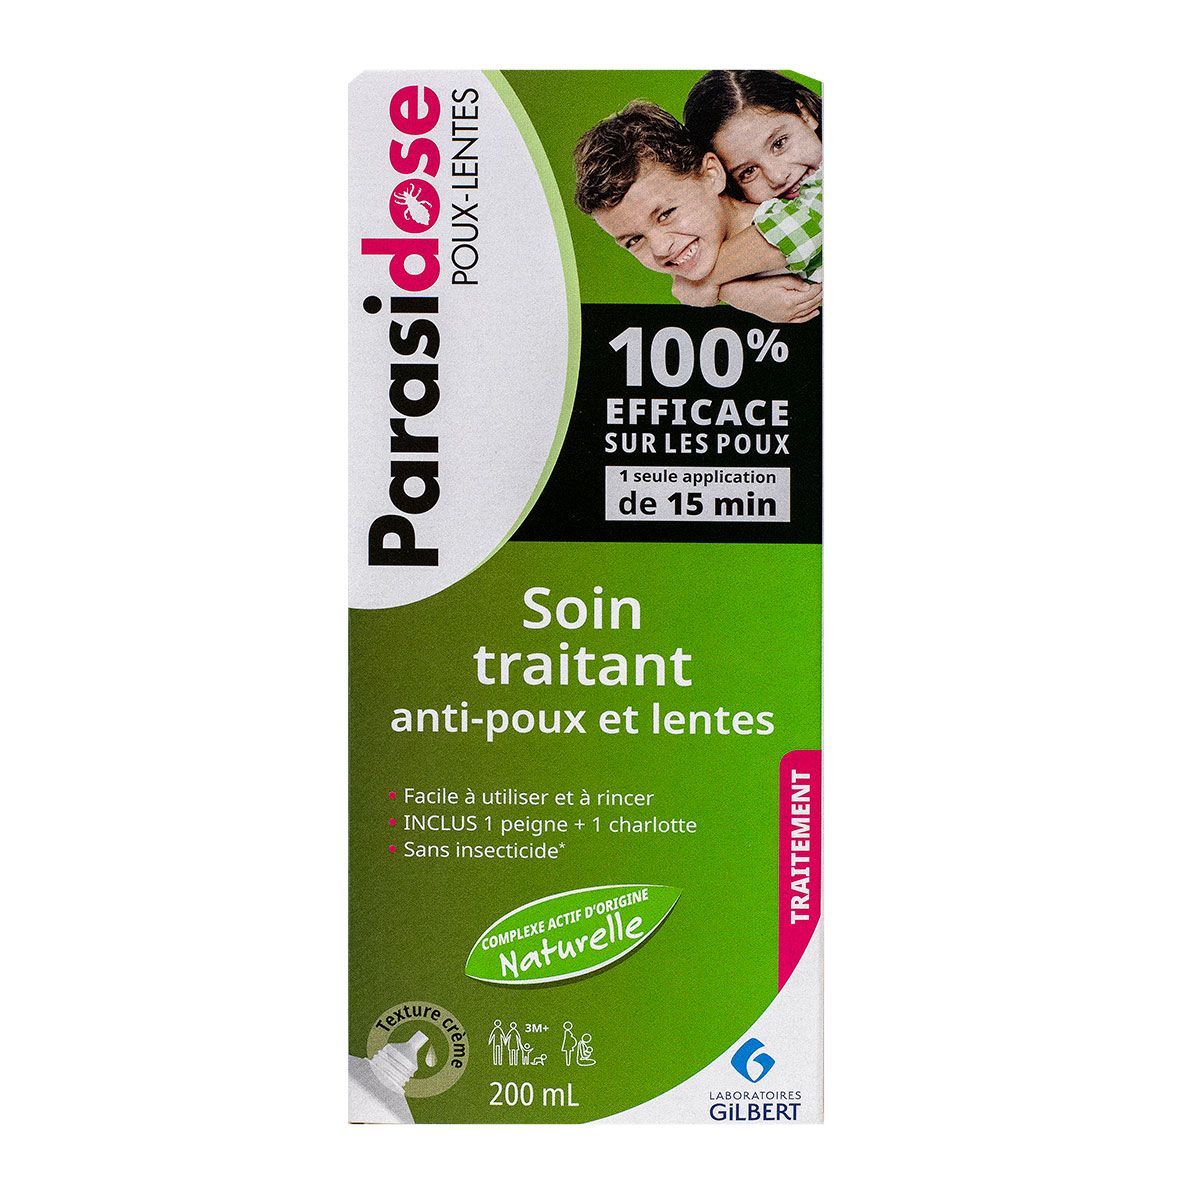 Shampoing préventif anti-poux - Parasidose